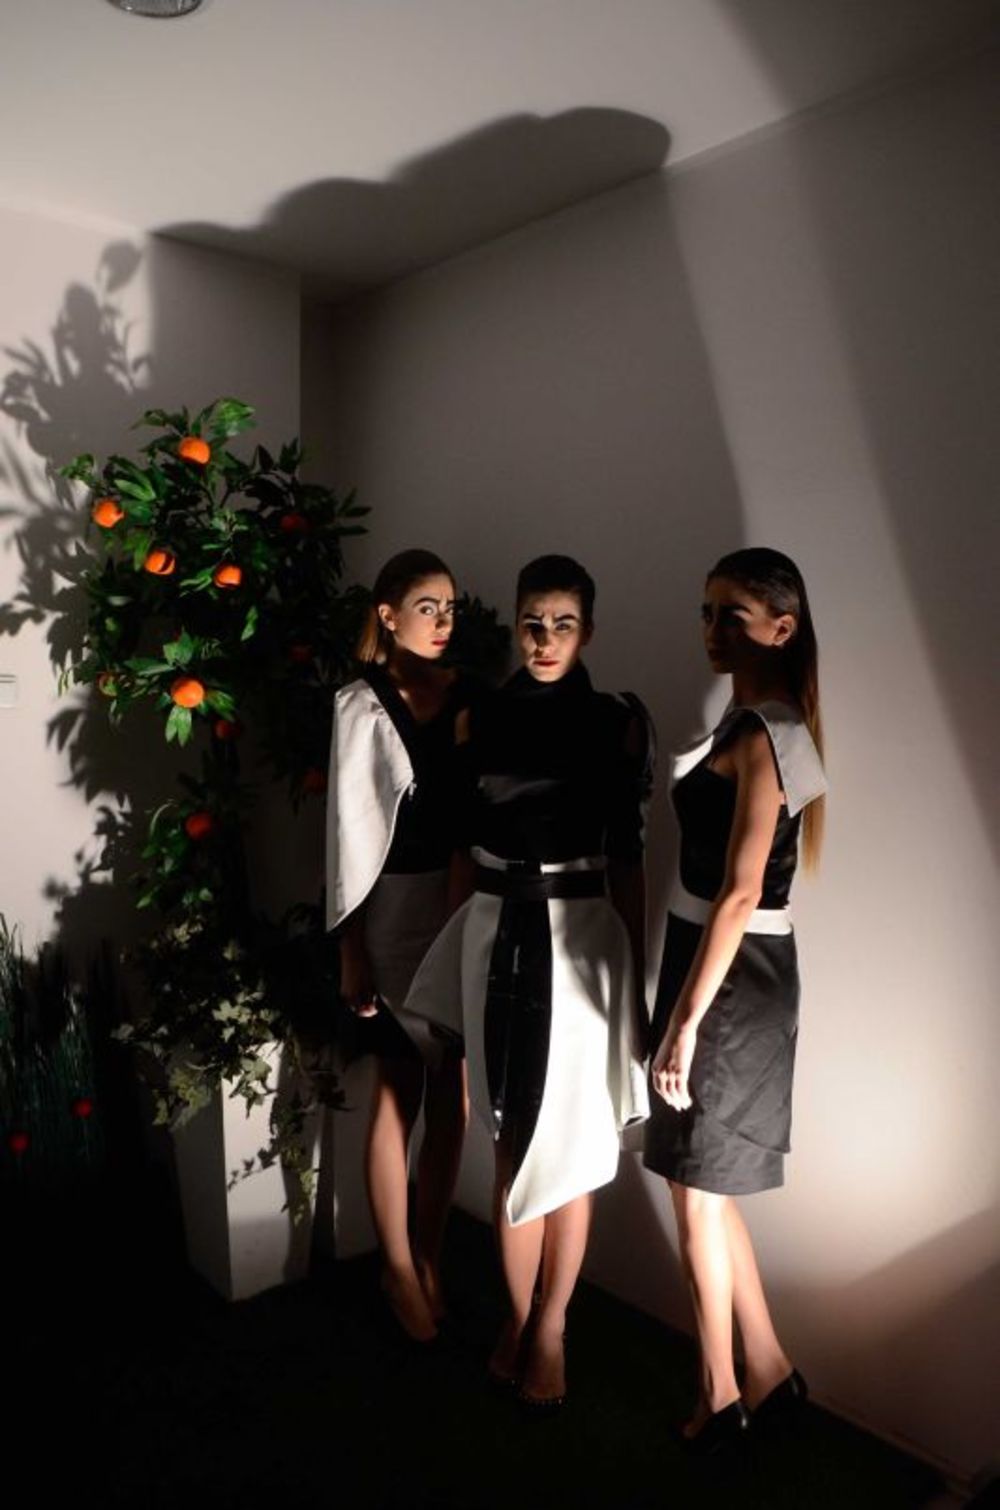 U okviru 23. Fashion Selectiona prestižna italijanska akademija za dizajn Accademia Del Lusso predstavila se izložbom studentskih radova pod nazivom Botanical Fashion Party. Svoje diplomske radove na temu botanike predstavile su studentkinje Danijela Božić, Ma